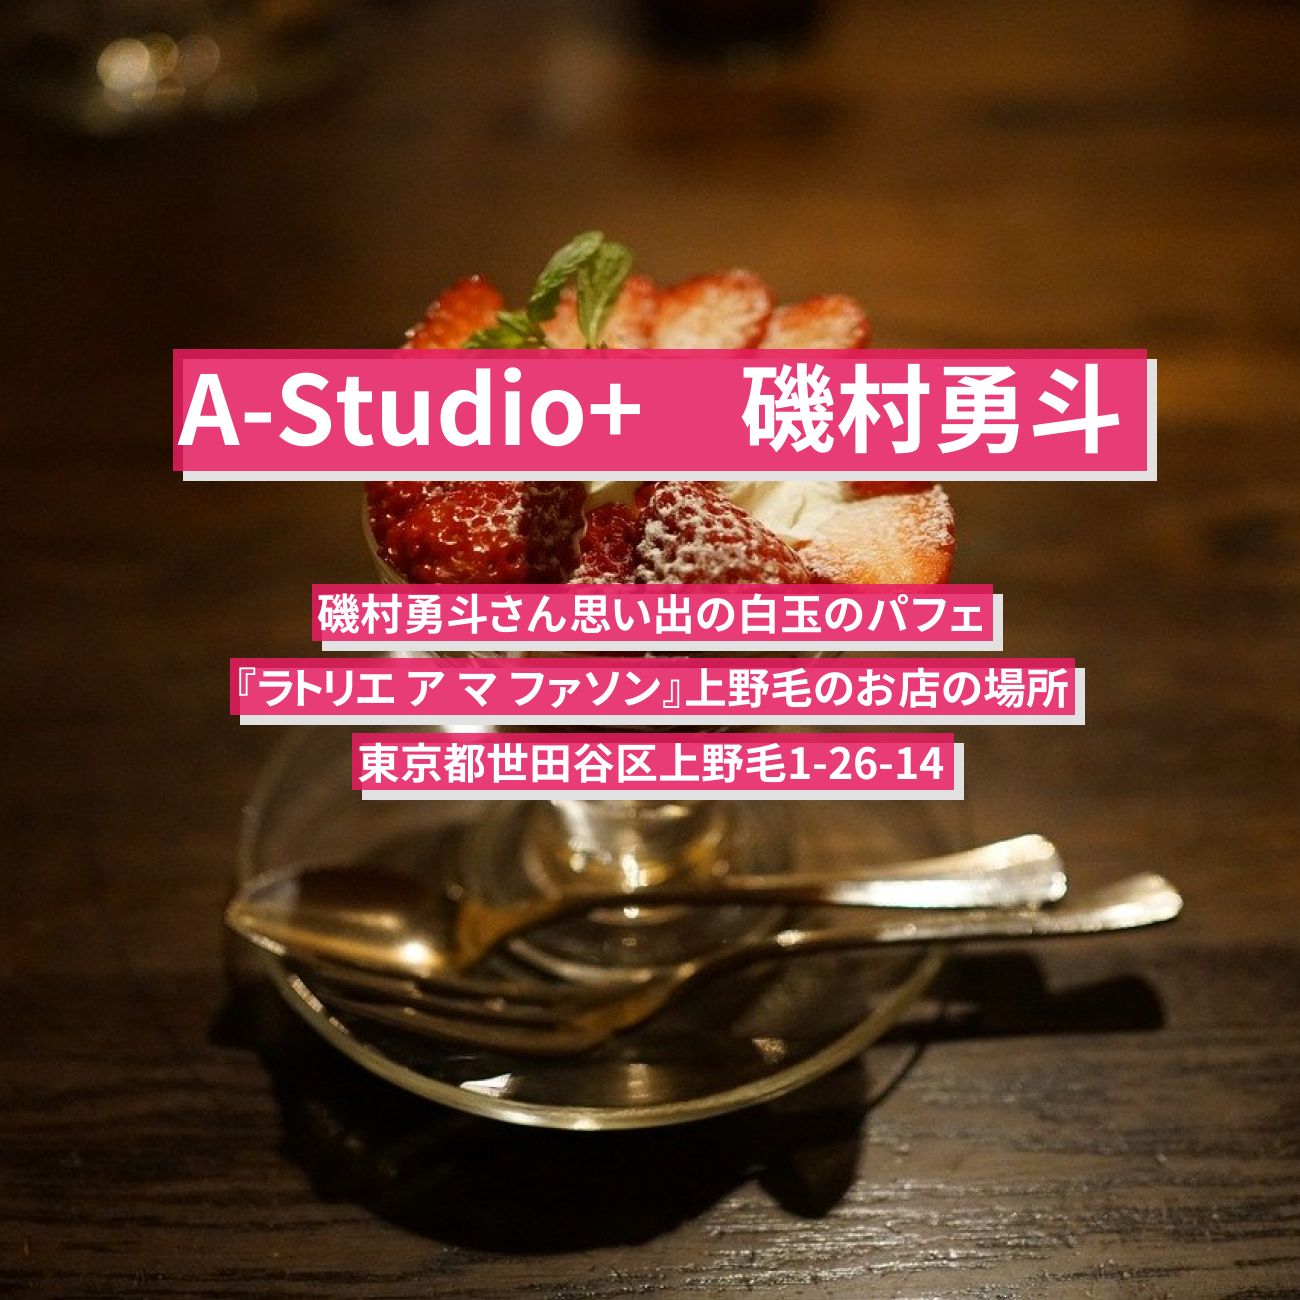 【A-Studio+】磯村勇斗　わらび餅と白玉団子のパフェ『ラトリエ ア マ ファソン』上野毛のお店の場所